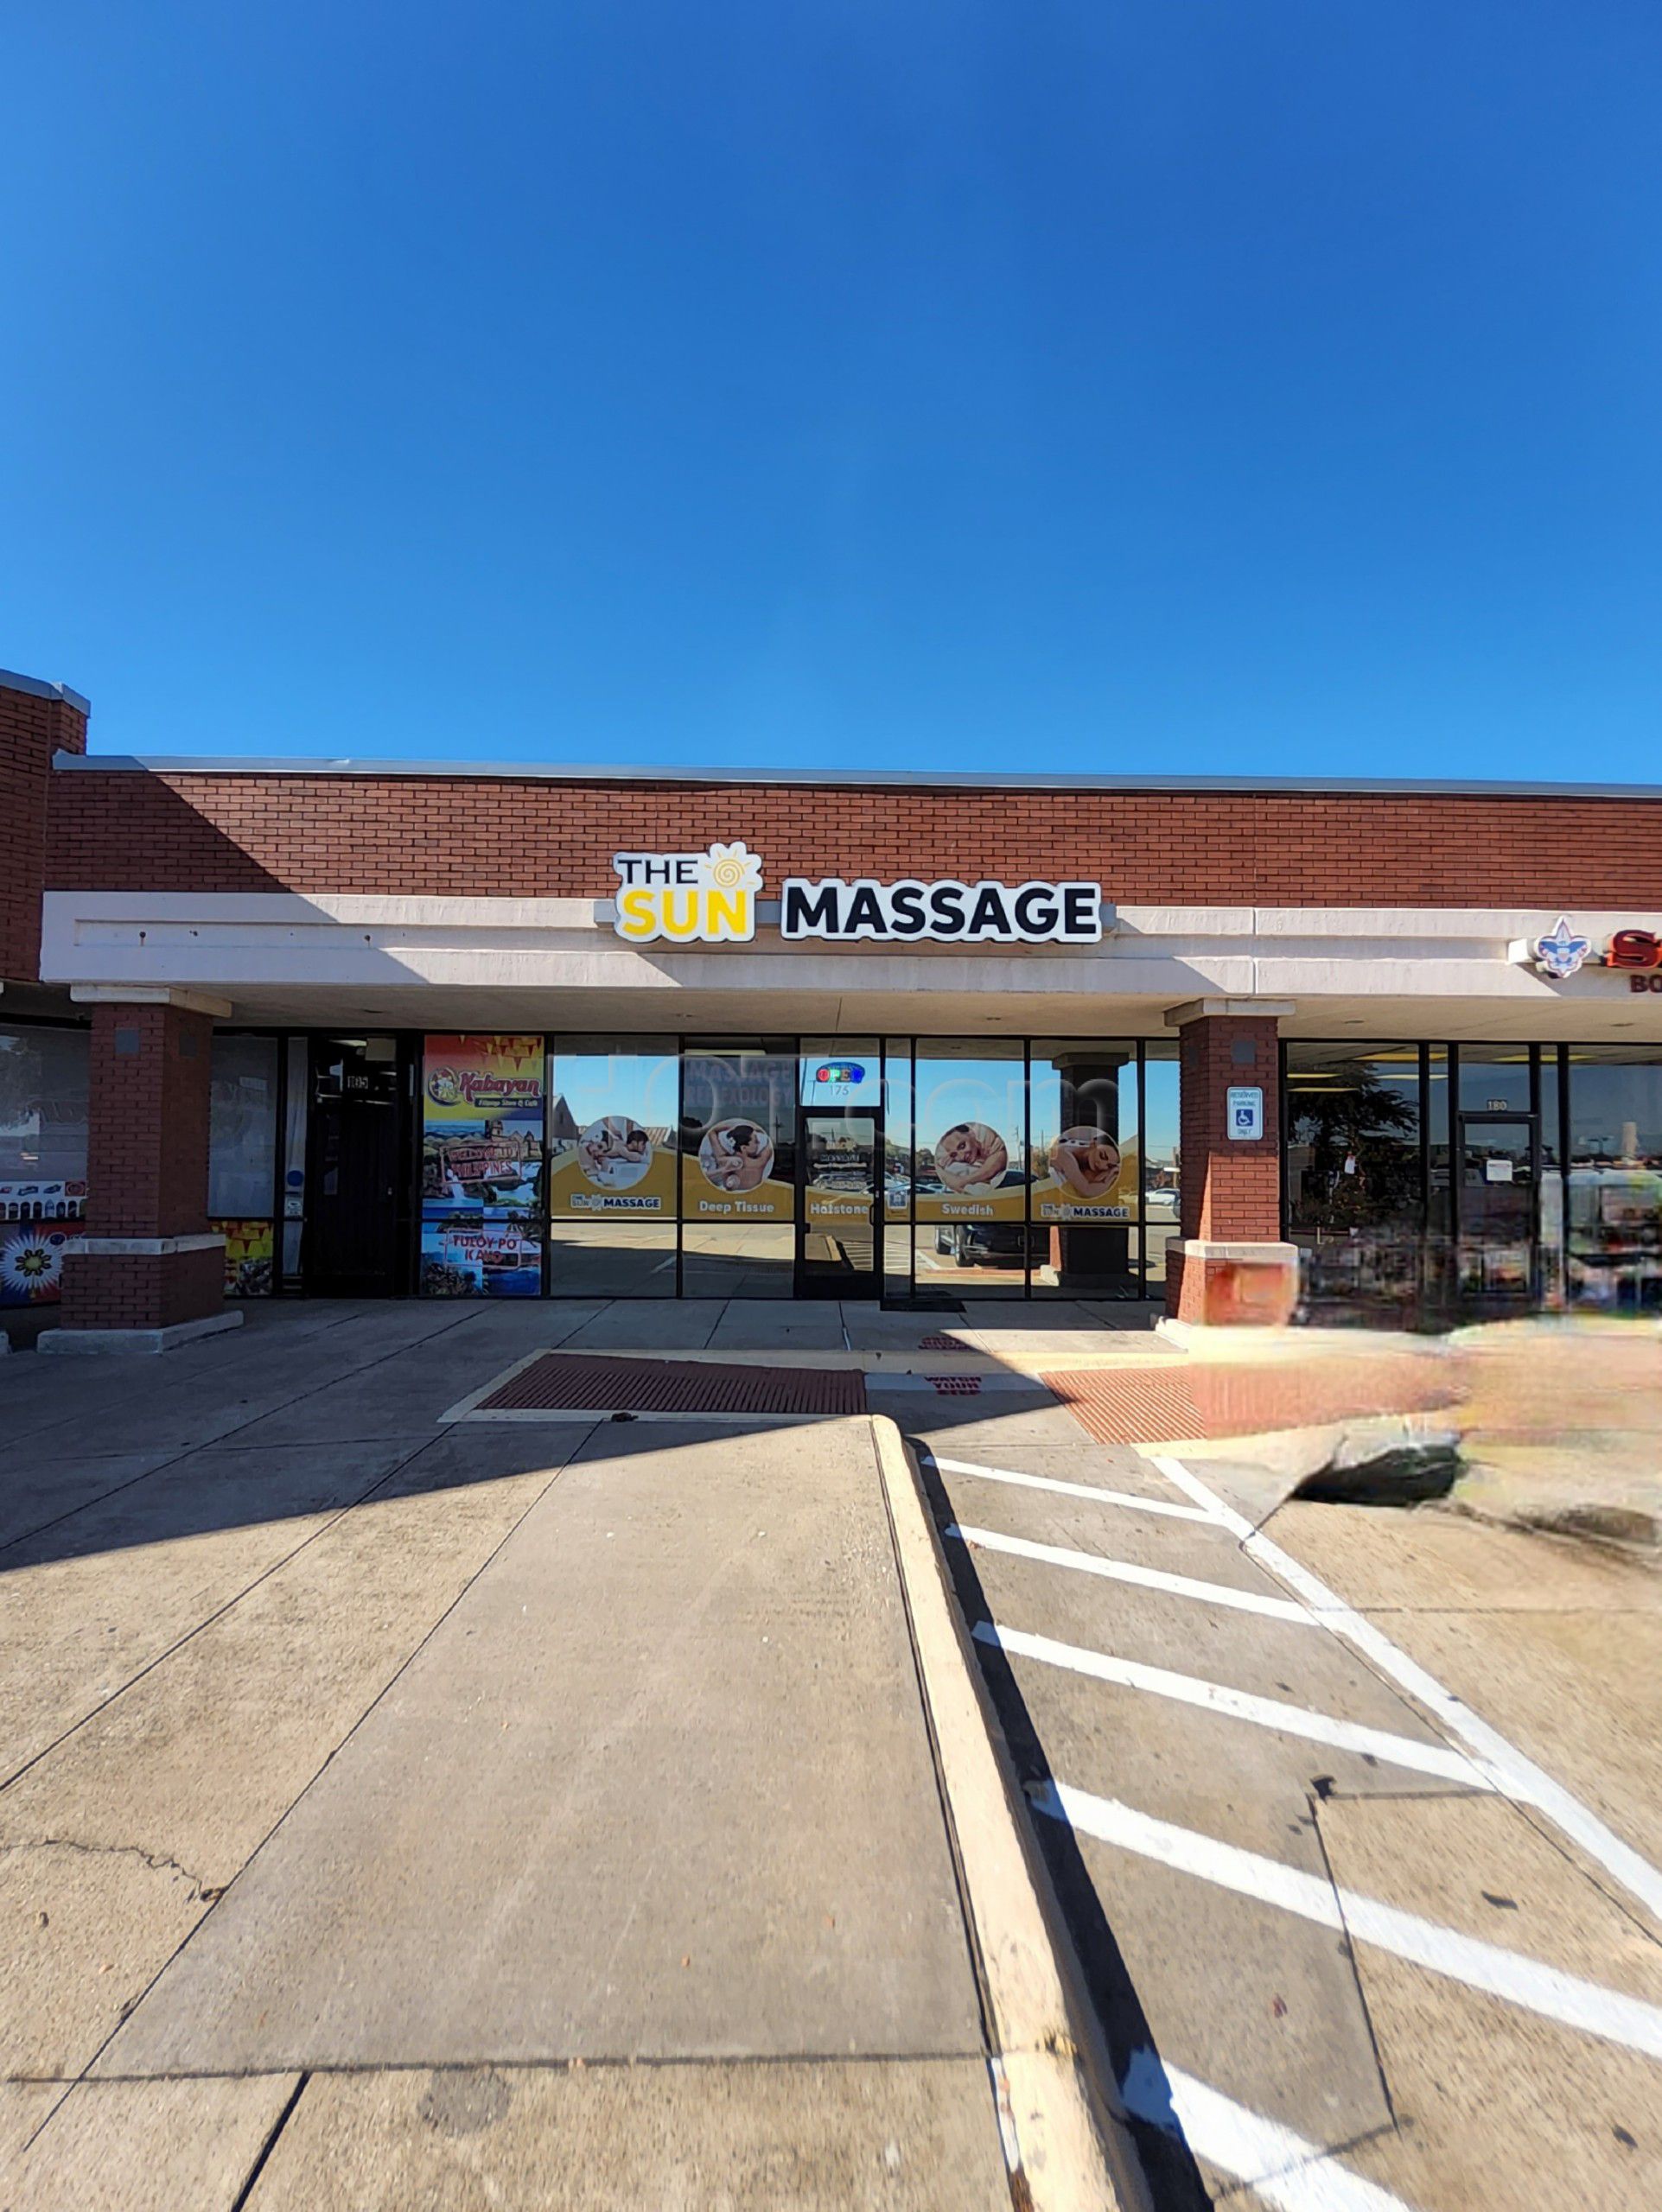 Lewisville, Texas The Sun Massage